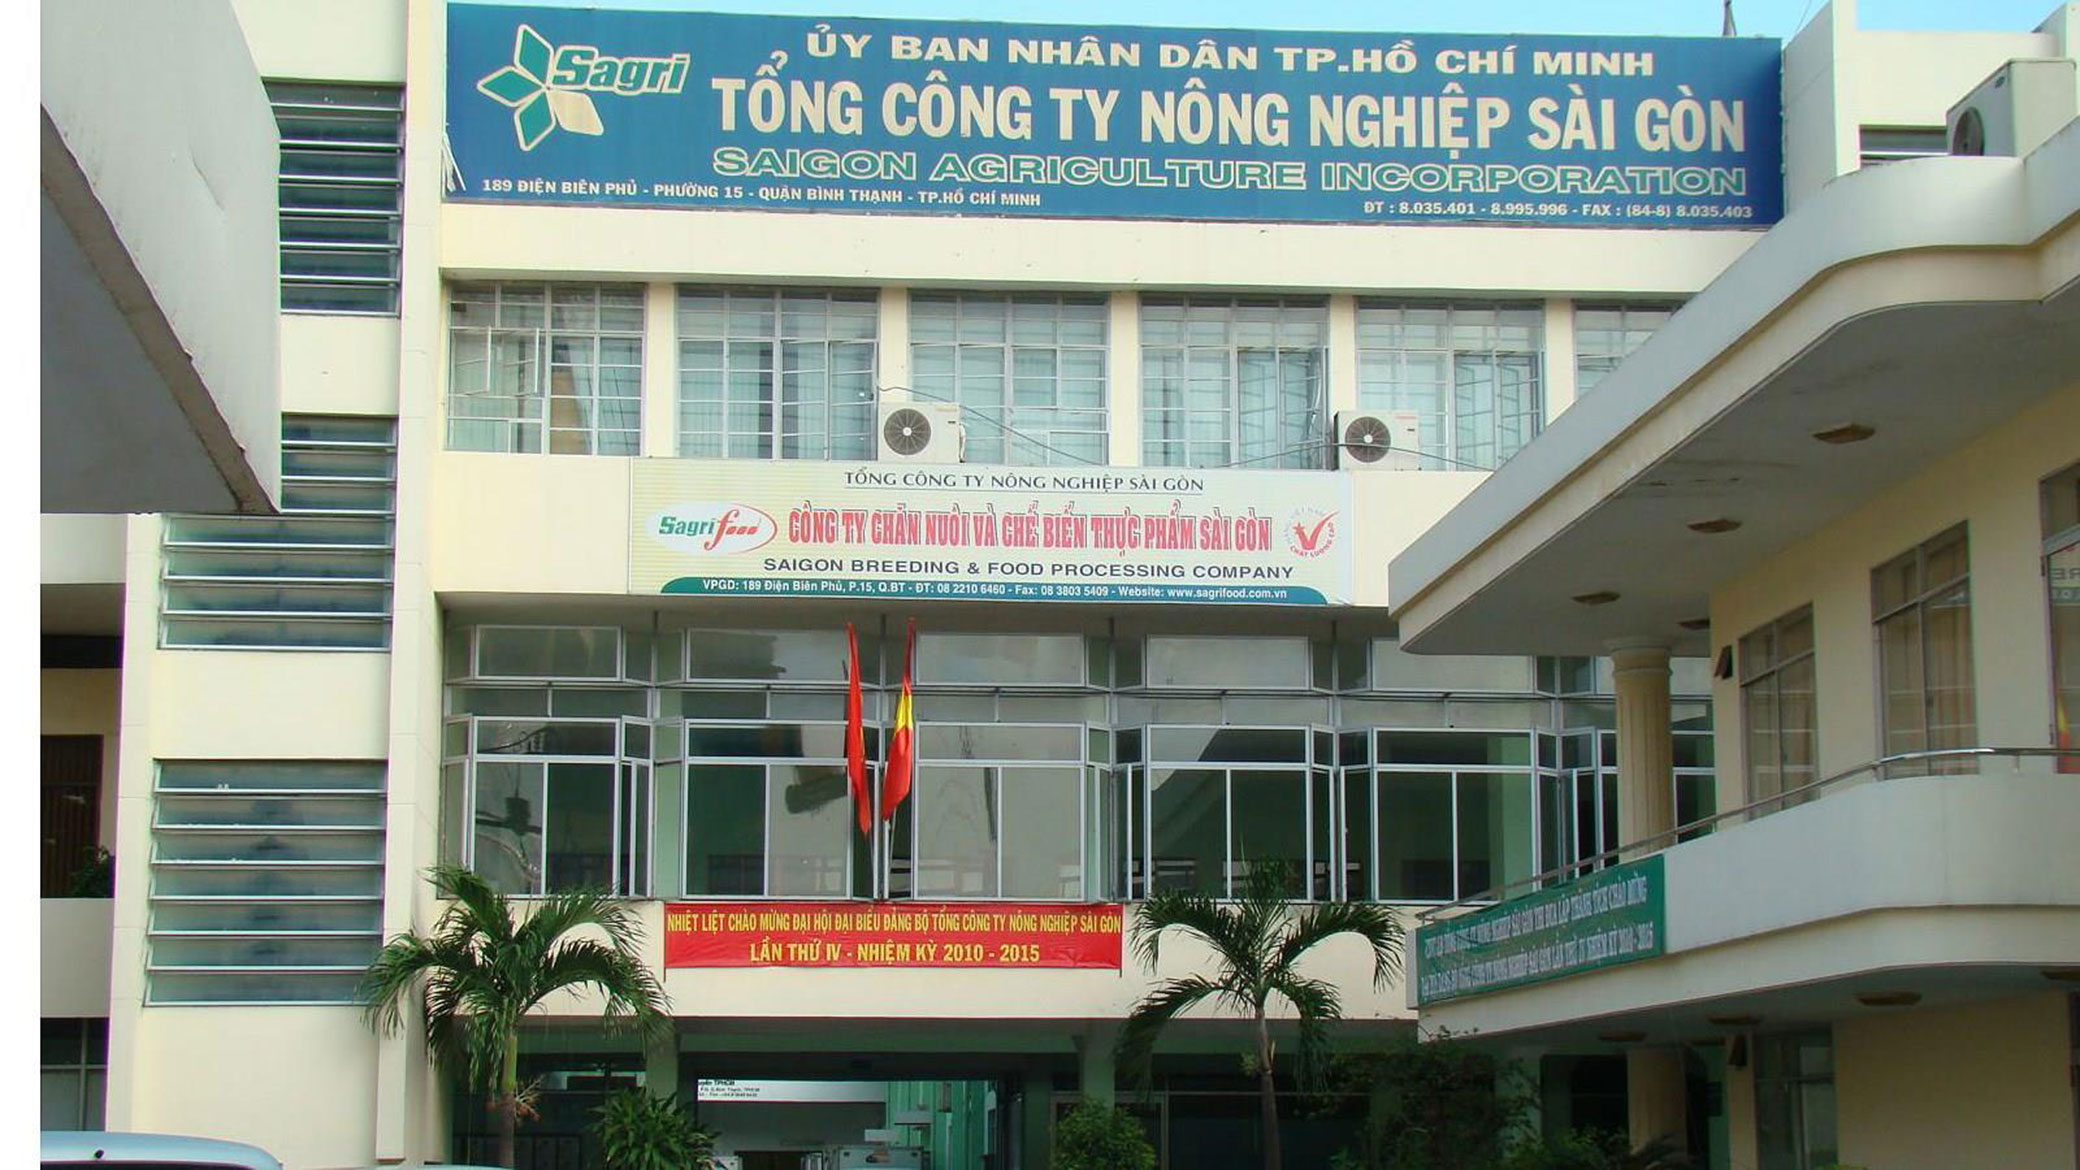 Tổng Công ty Nông nghiệp Sài Gòn - TNHH Một Thành viên